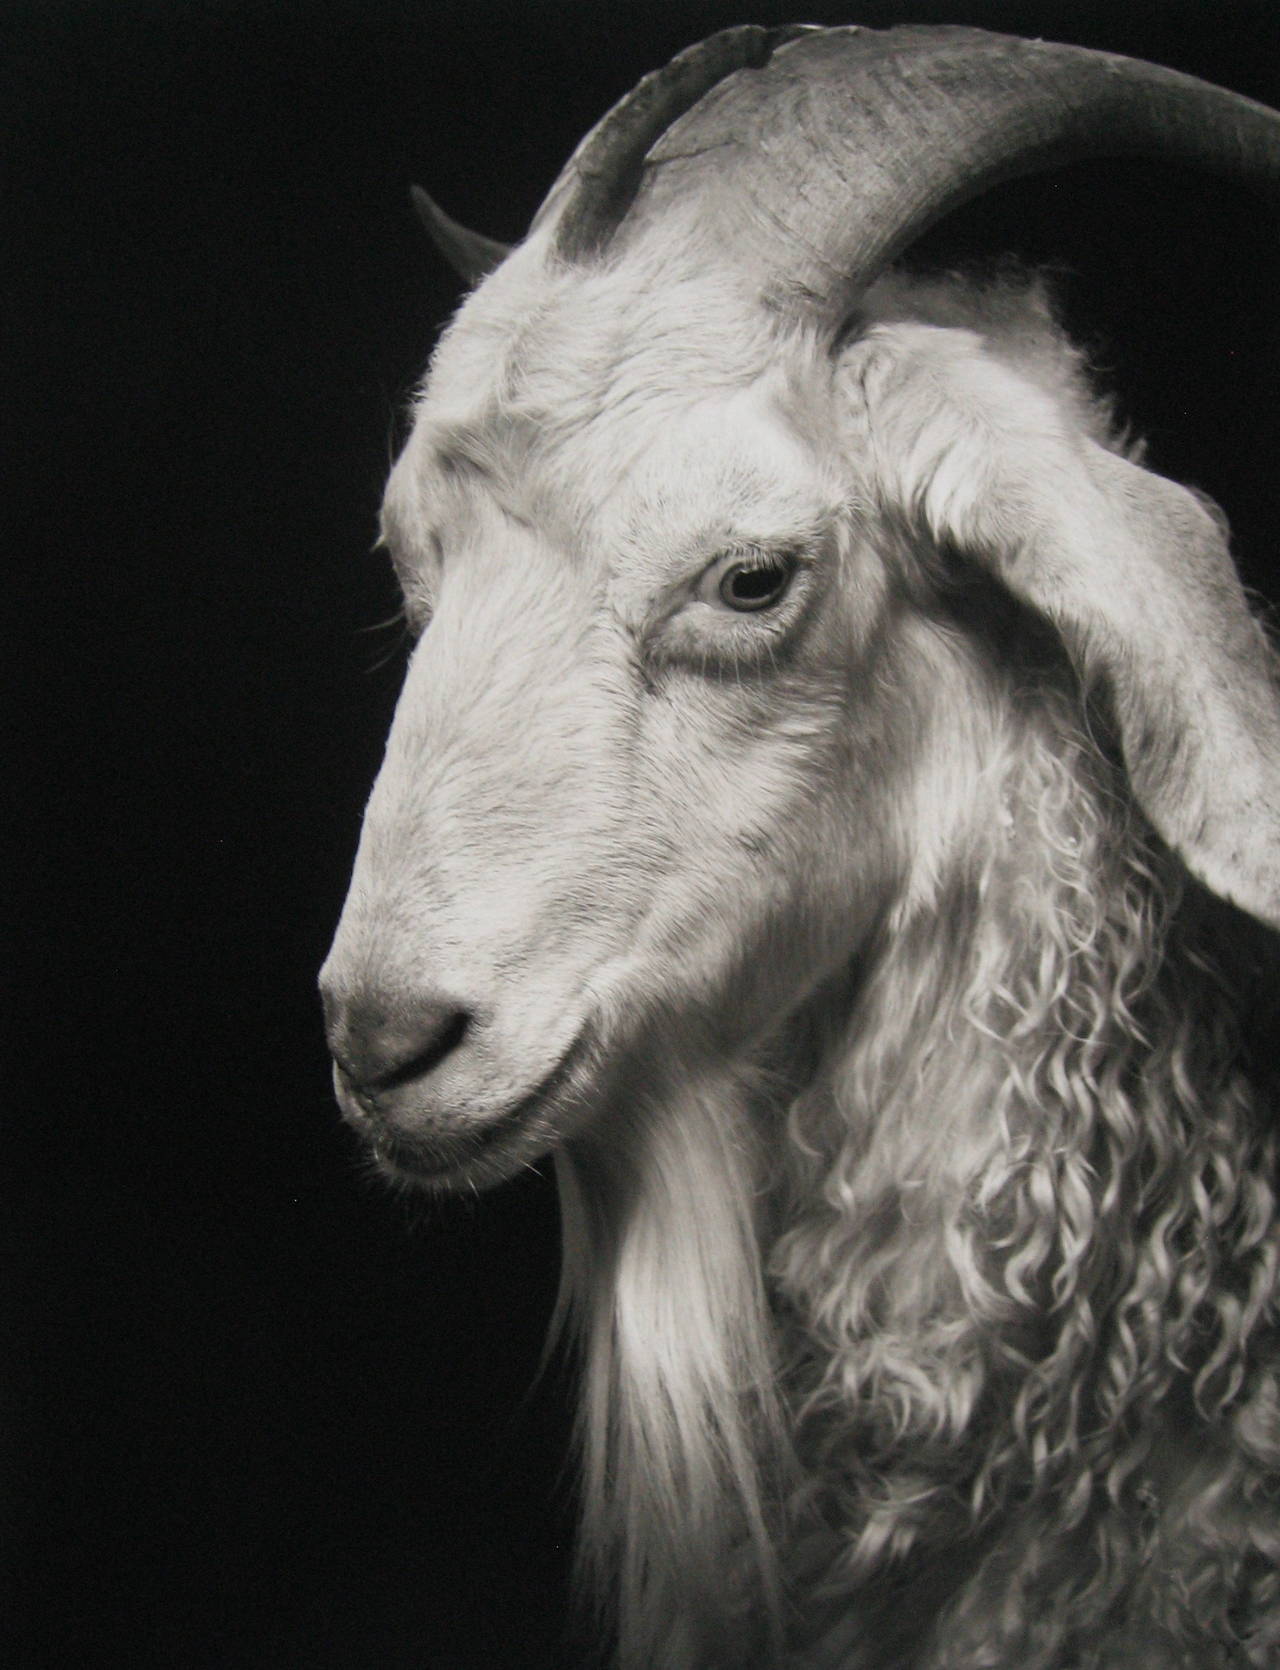 Sydney #1 de Kevin Whiting présente le portrait d'une chèvre blanche aux cheveux bouclés et à la longue barbiche. Cette photographie est répertoriée comme un tirage pigmentaire d'archives de 14 x 11 pouces, le format du papier mesurant 17 x 13